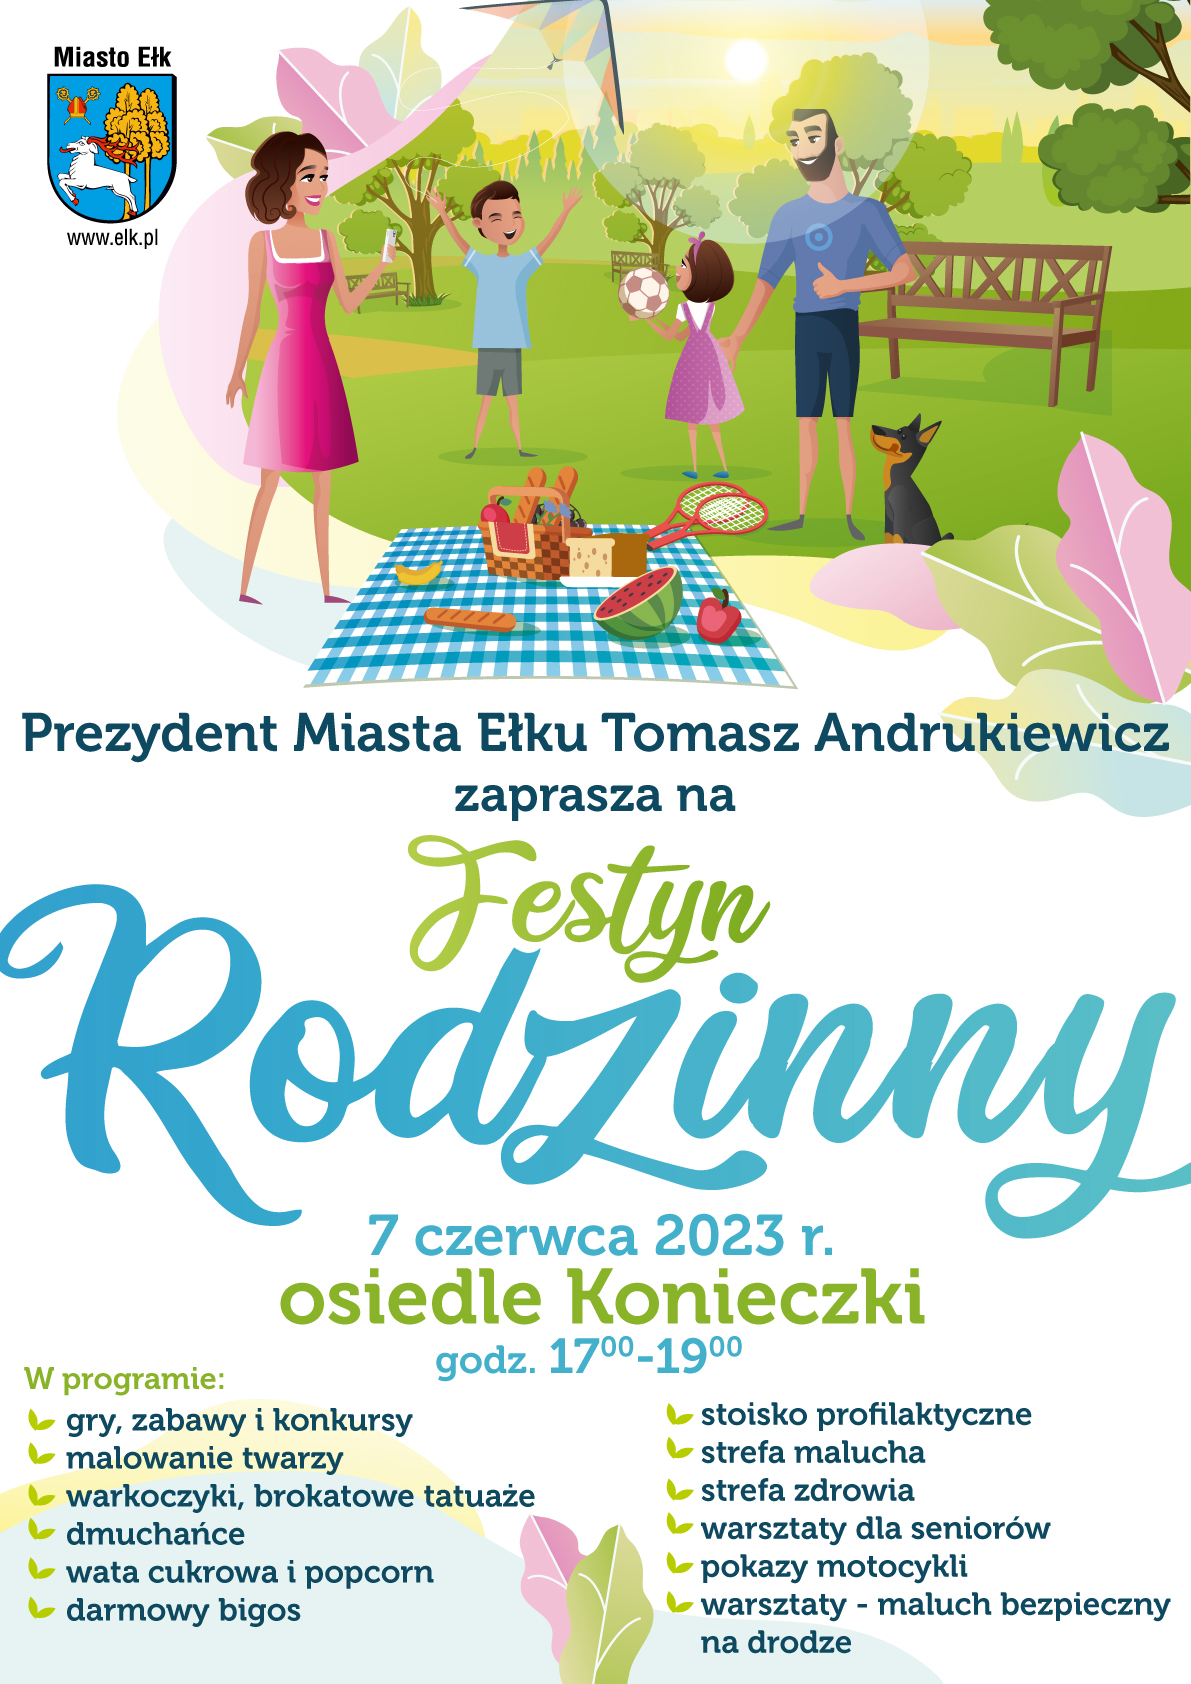 Ełk Family Days - Familienfest in der Siedlung Konieczki